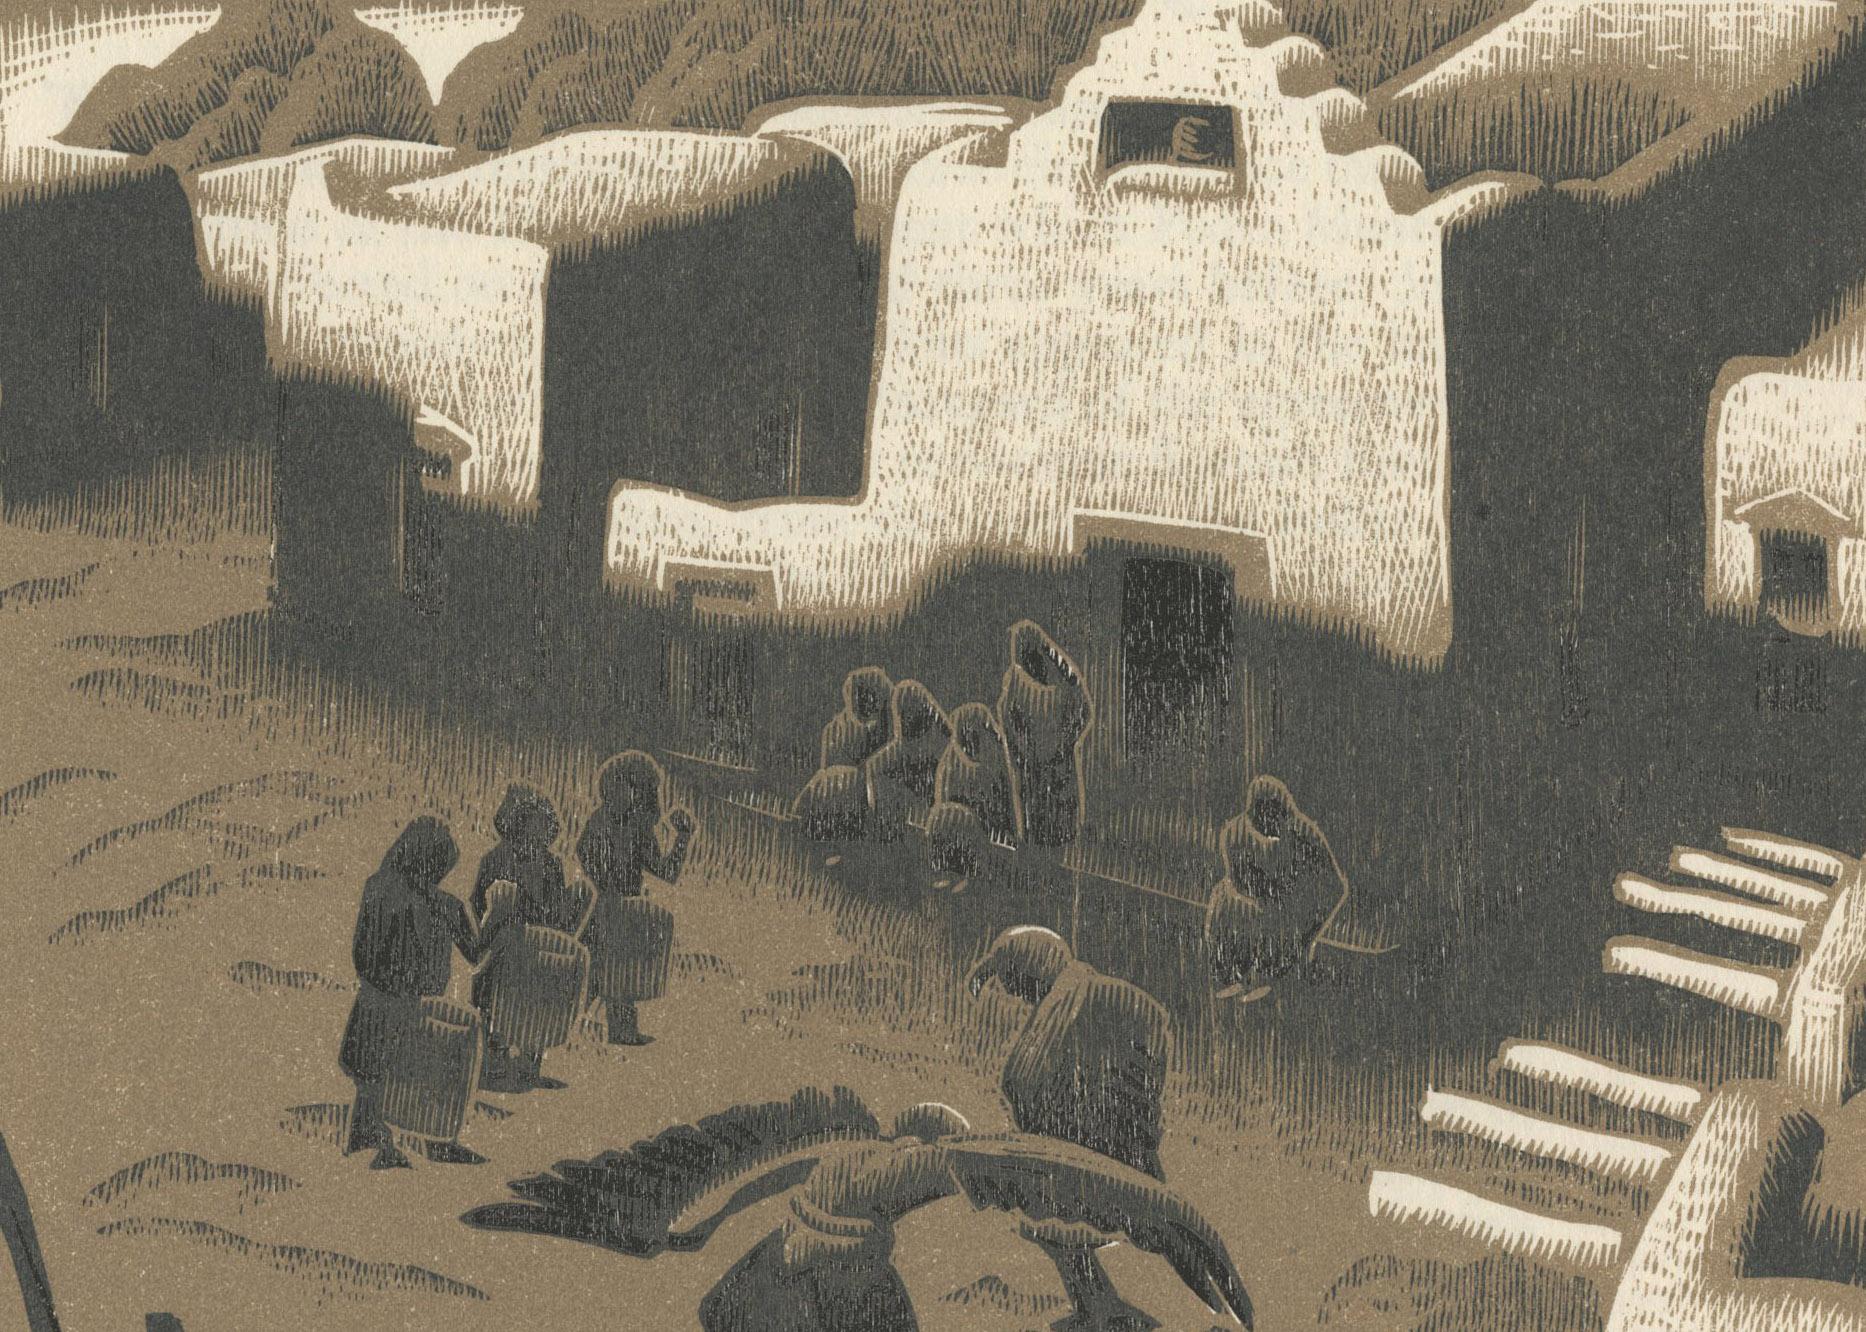 Une cérémonie d'aigle au Tesuque Pueblo
Gravure sur bois imprimée en deux couleurs, 1932
Non signé comme d'habitude ; paraphé dans la plaque en bas à gauche (voir photo)
Tel que publié par Elmer Adler dans 